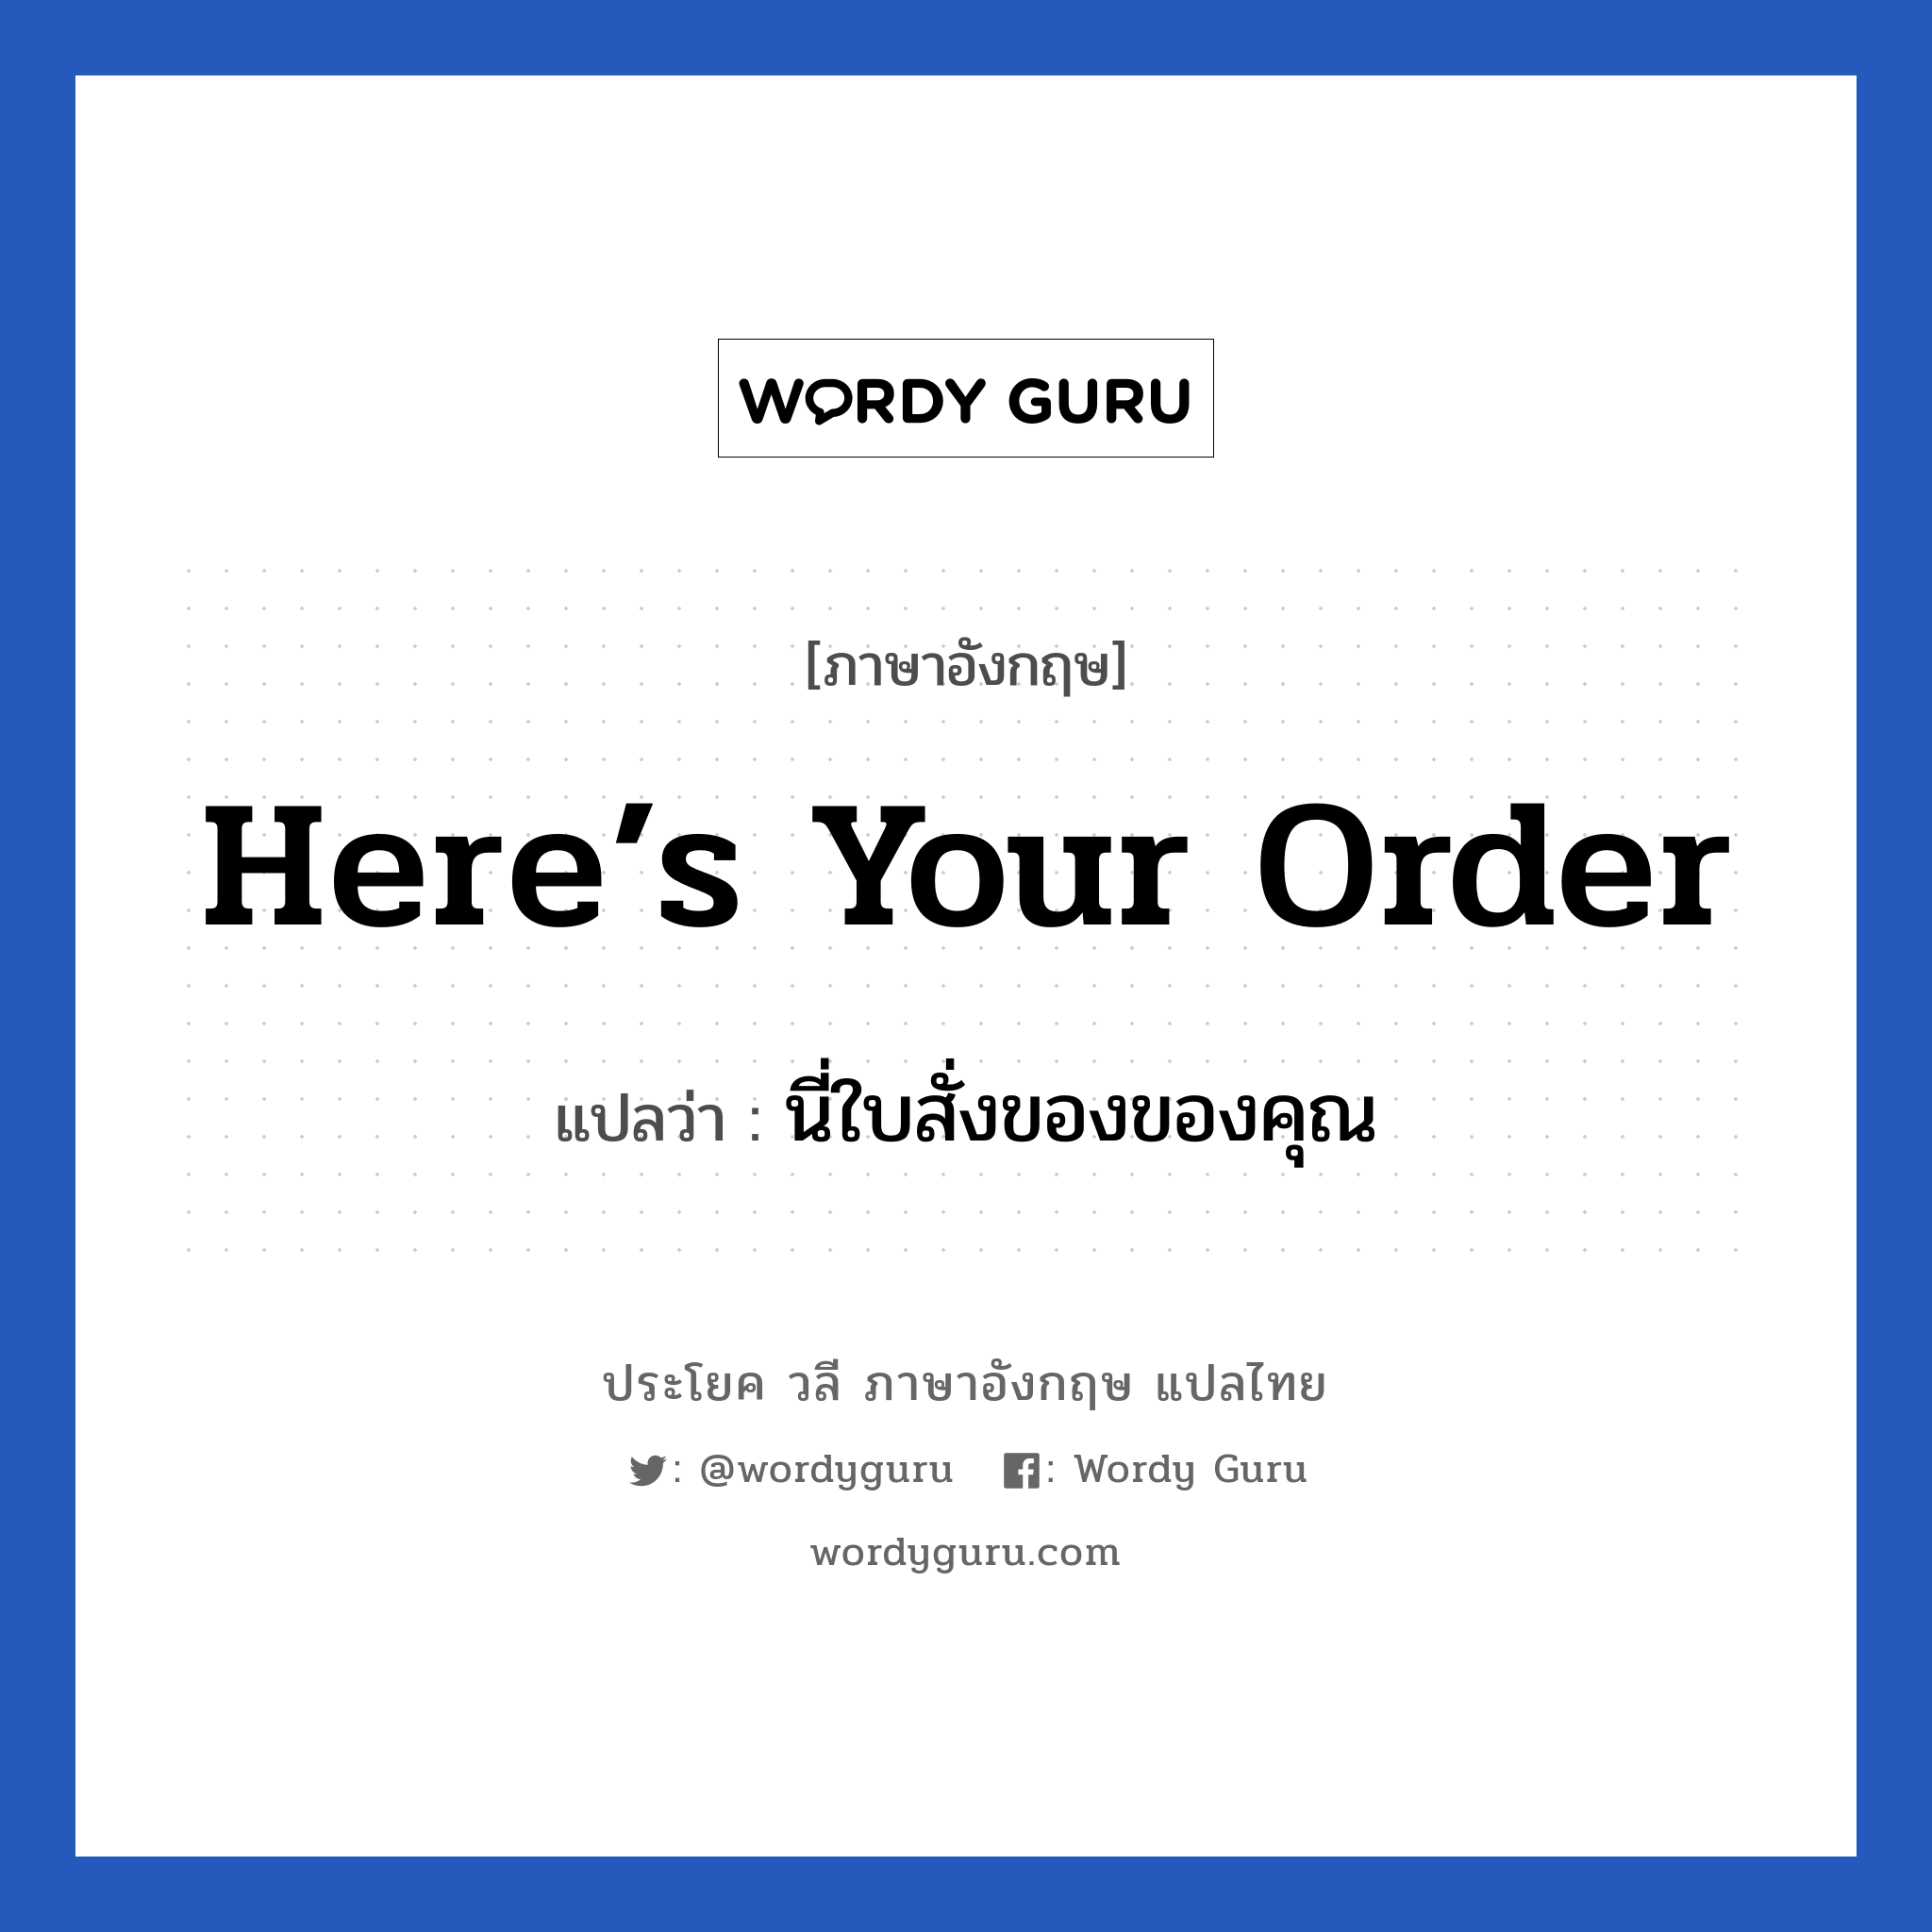 นี่ใบสั่งของของคุณ ภาษาอังกฤษ?, วลีภาษาอังกฤษ นี่ใบสั่งของของคุณ แปลว่า Here’s your order